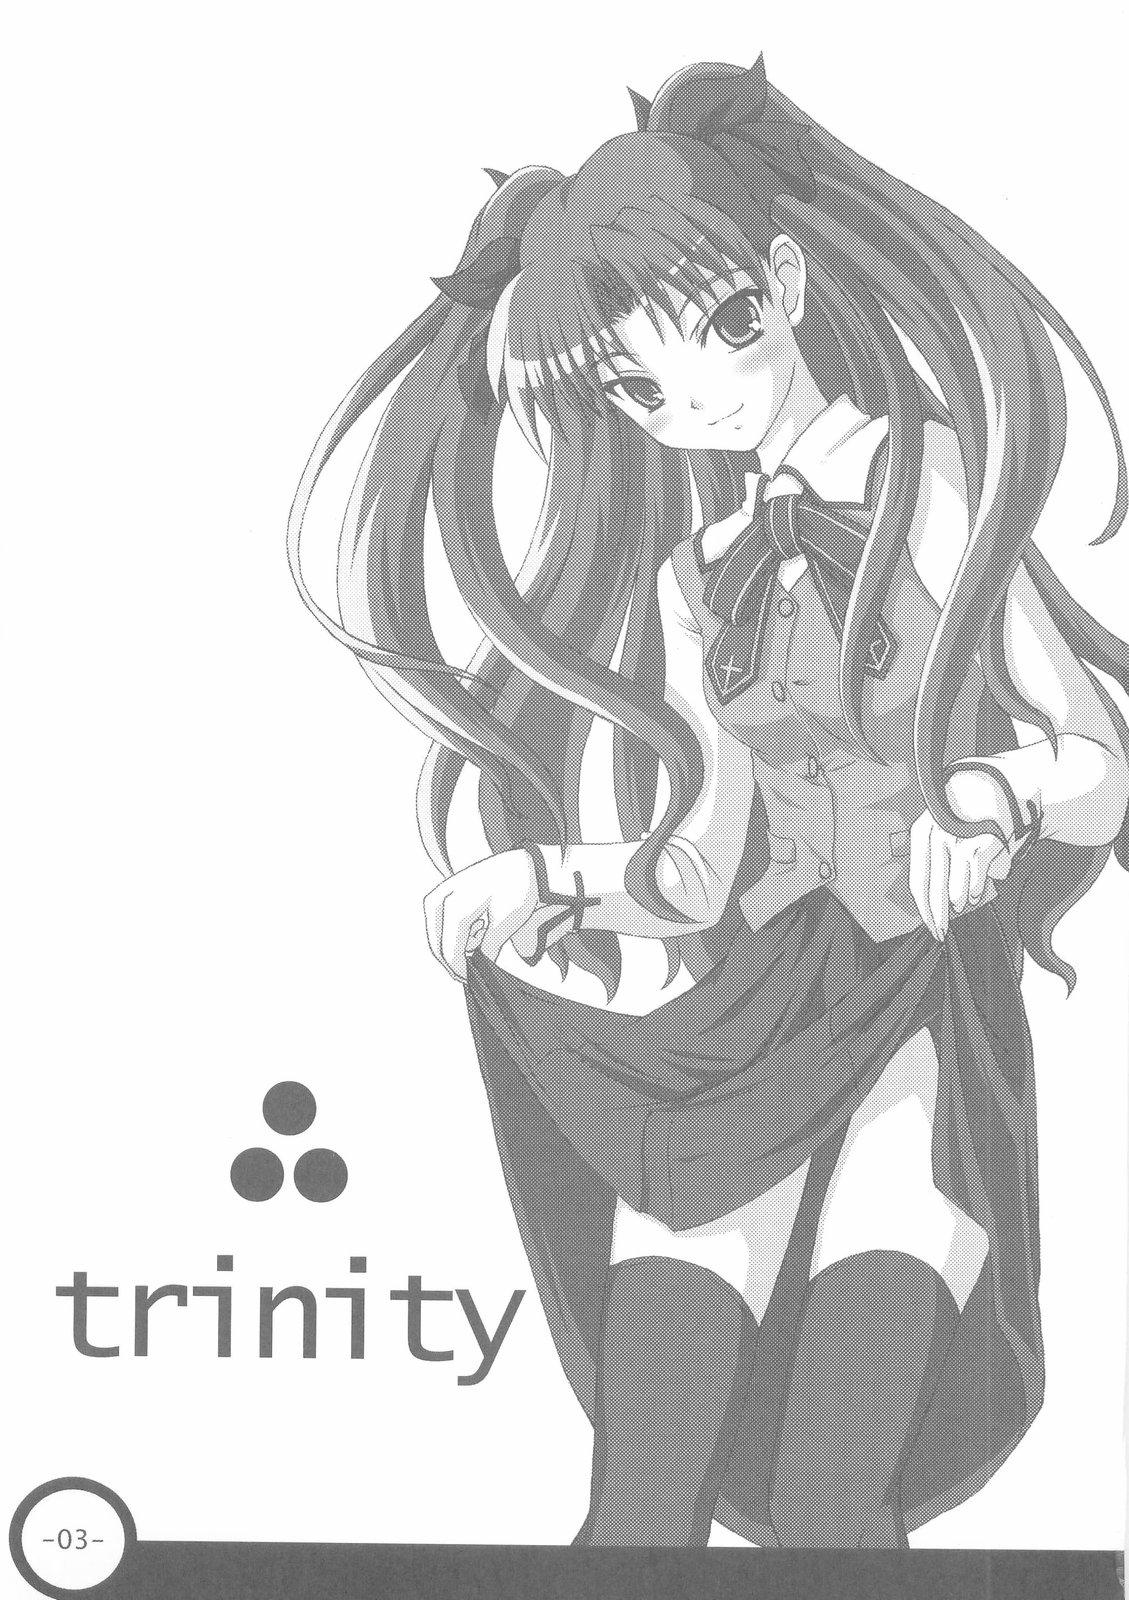 Trinity 2